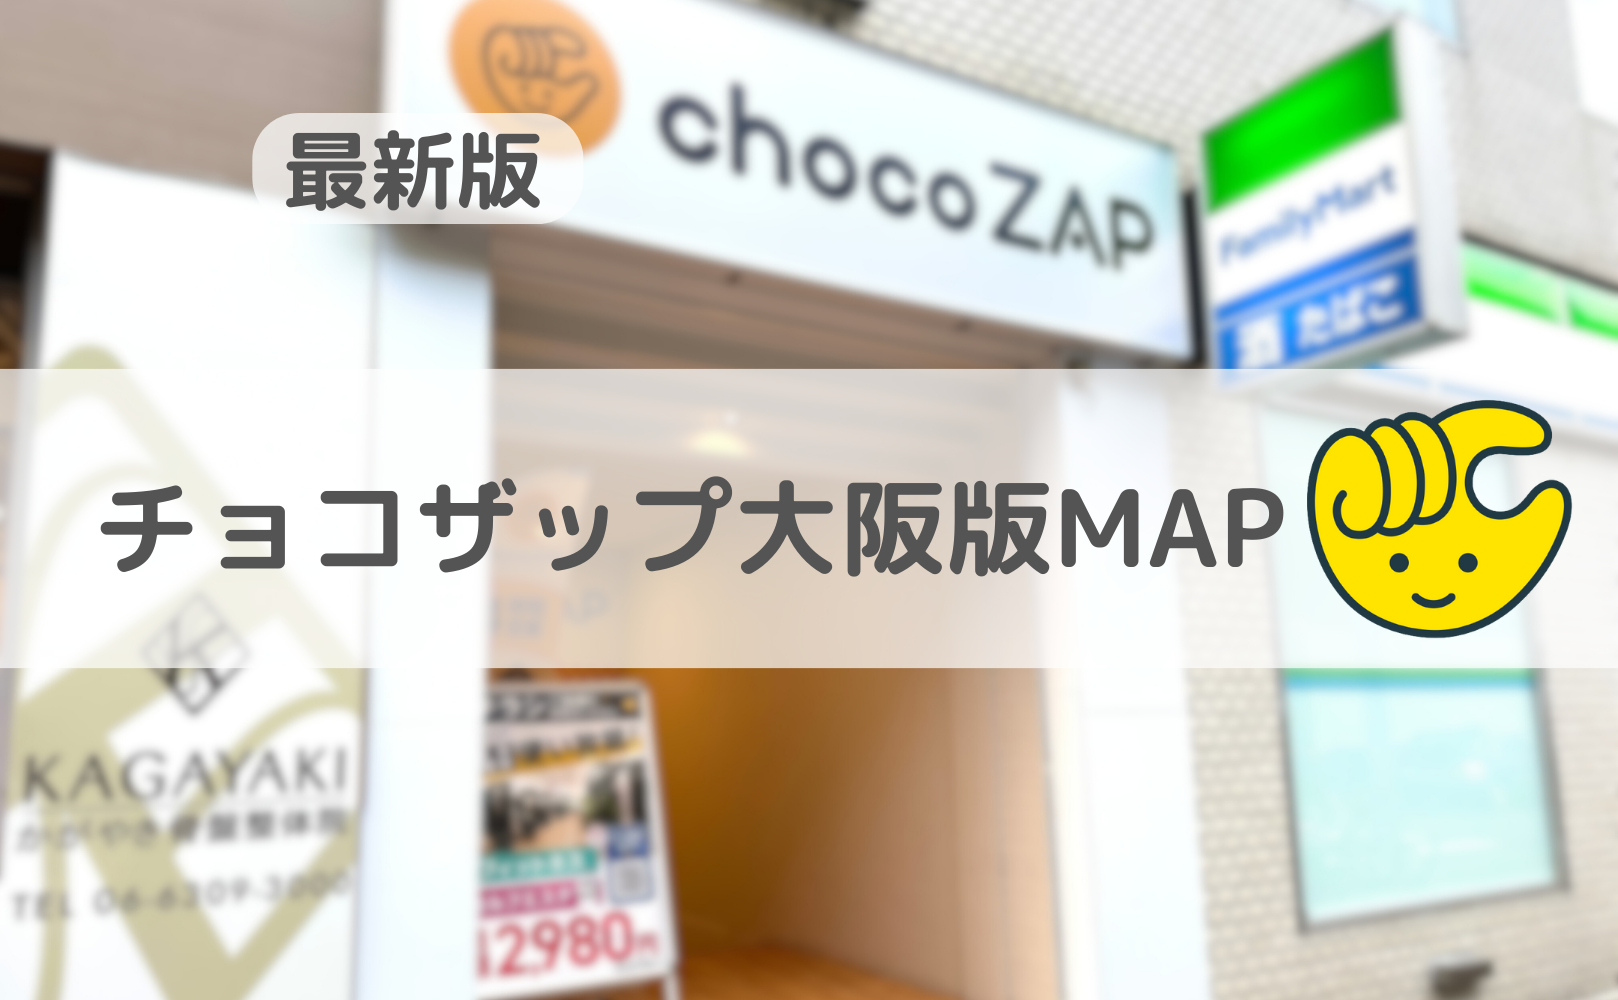 チョコザップ大阪版MAP